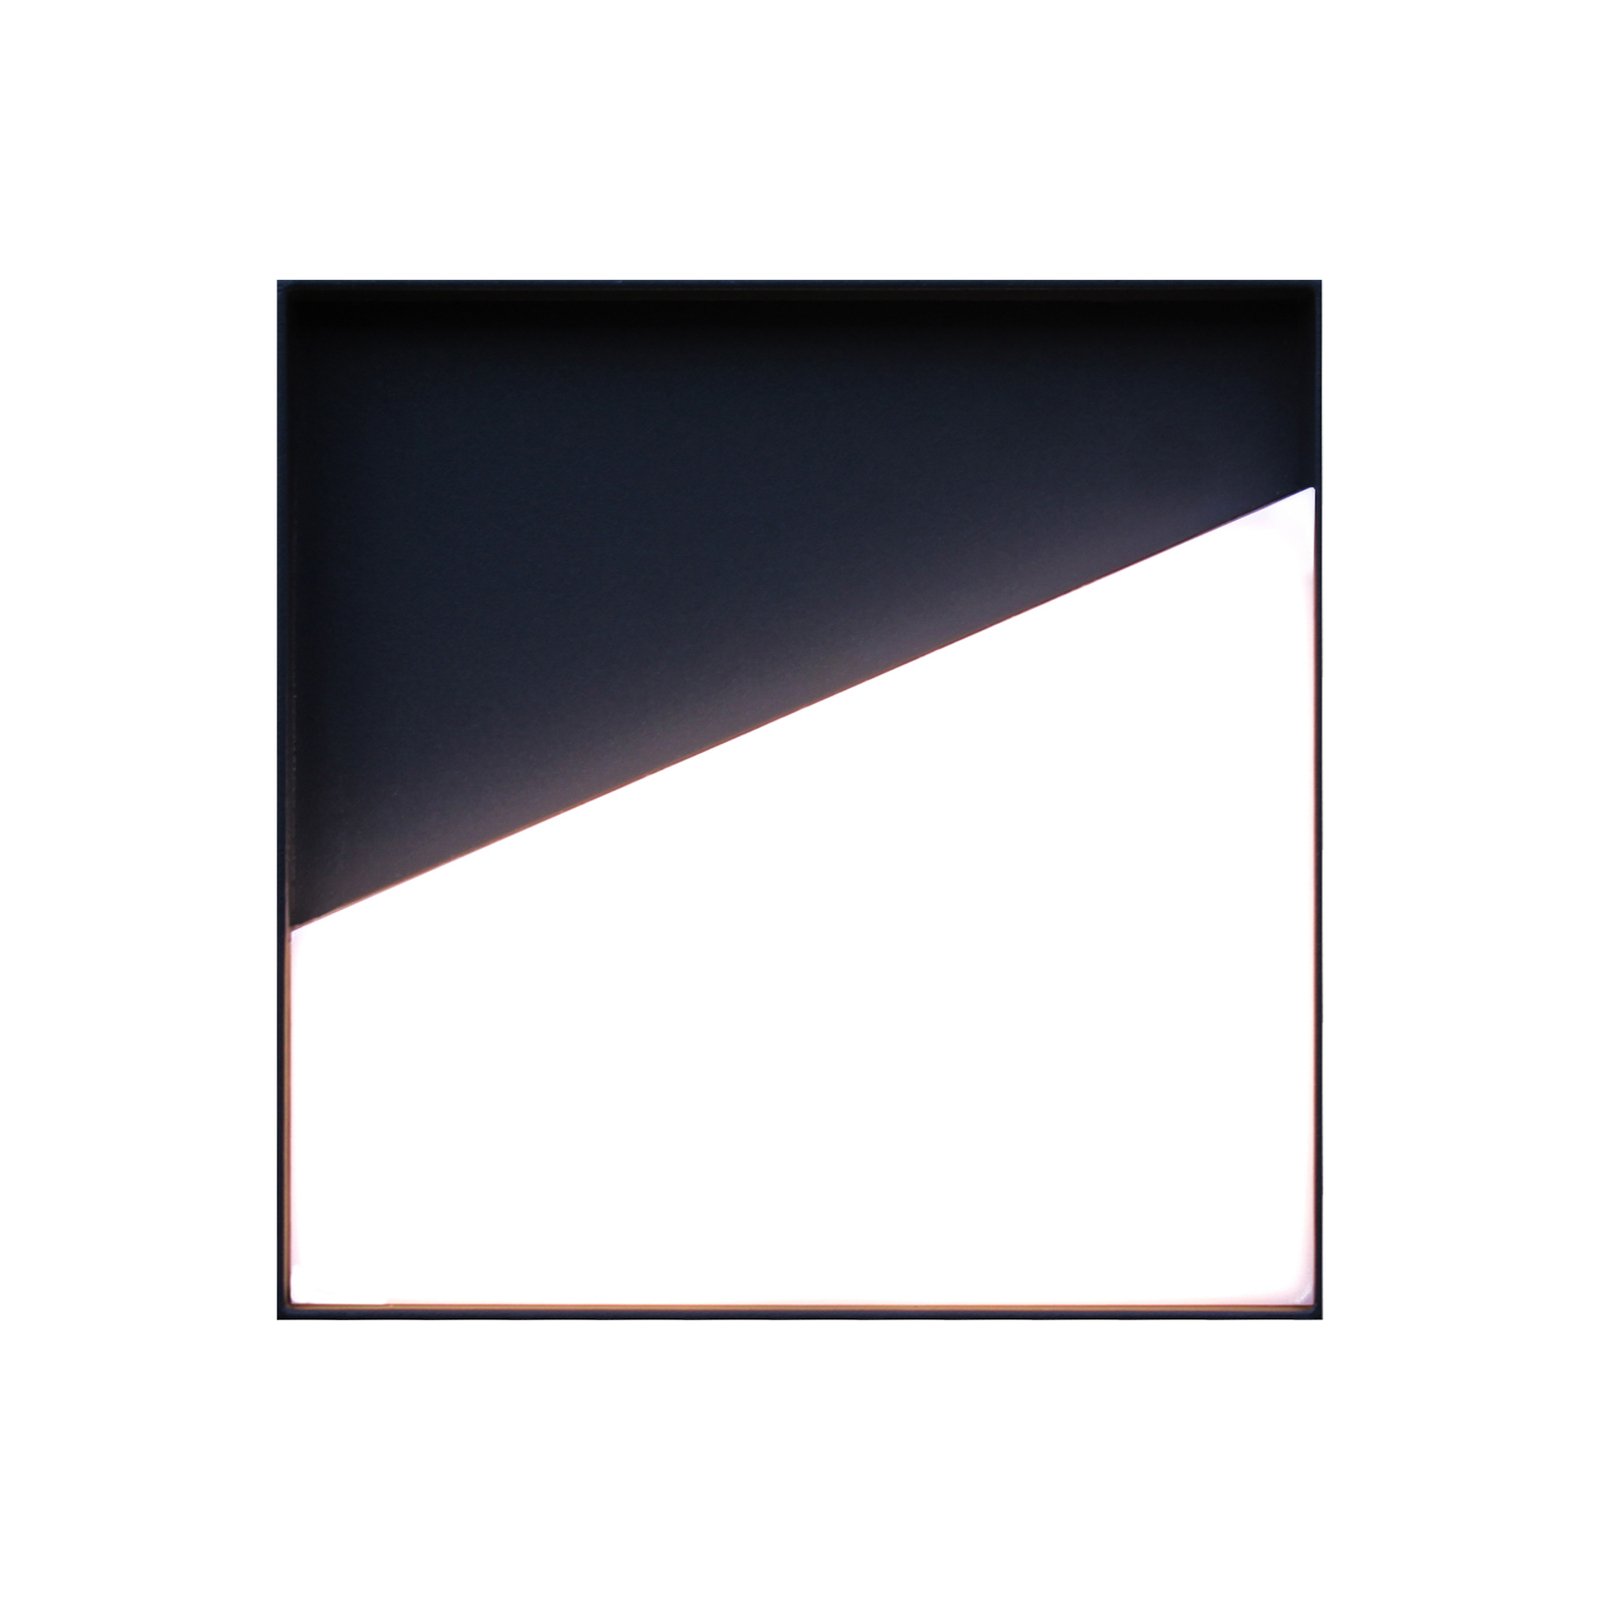 Zunanja stenska luč Meg LED za polnjenje, antracitna, 15 x 15 cm